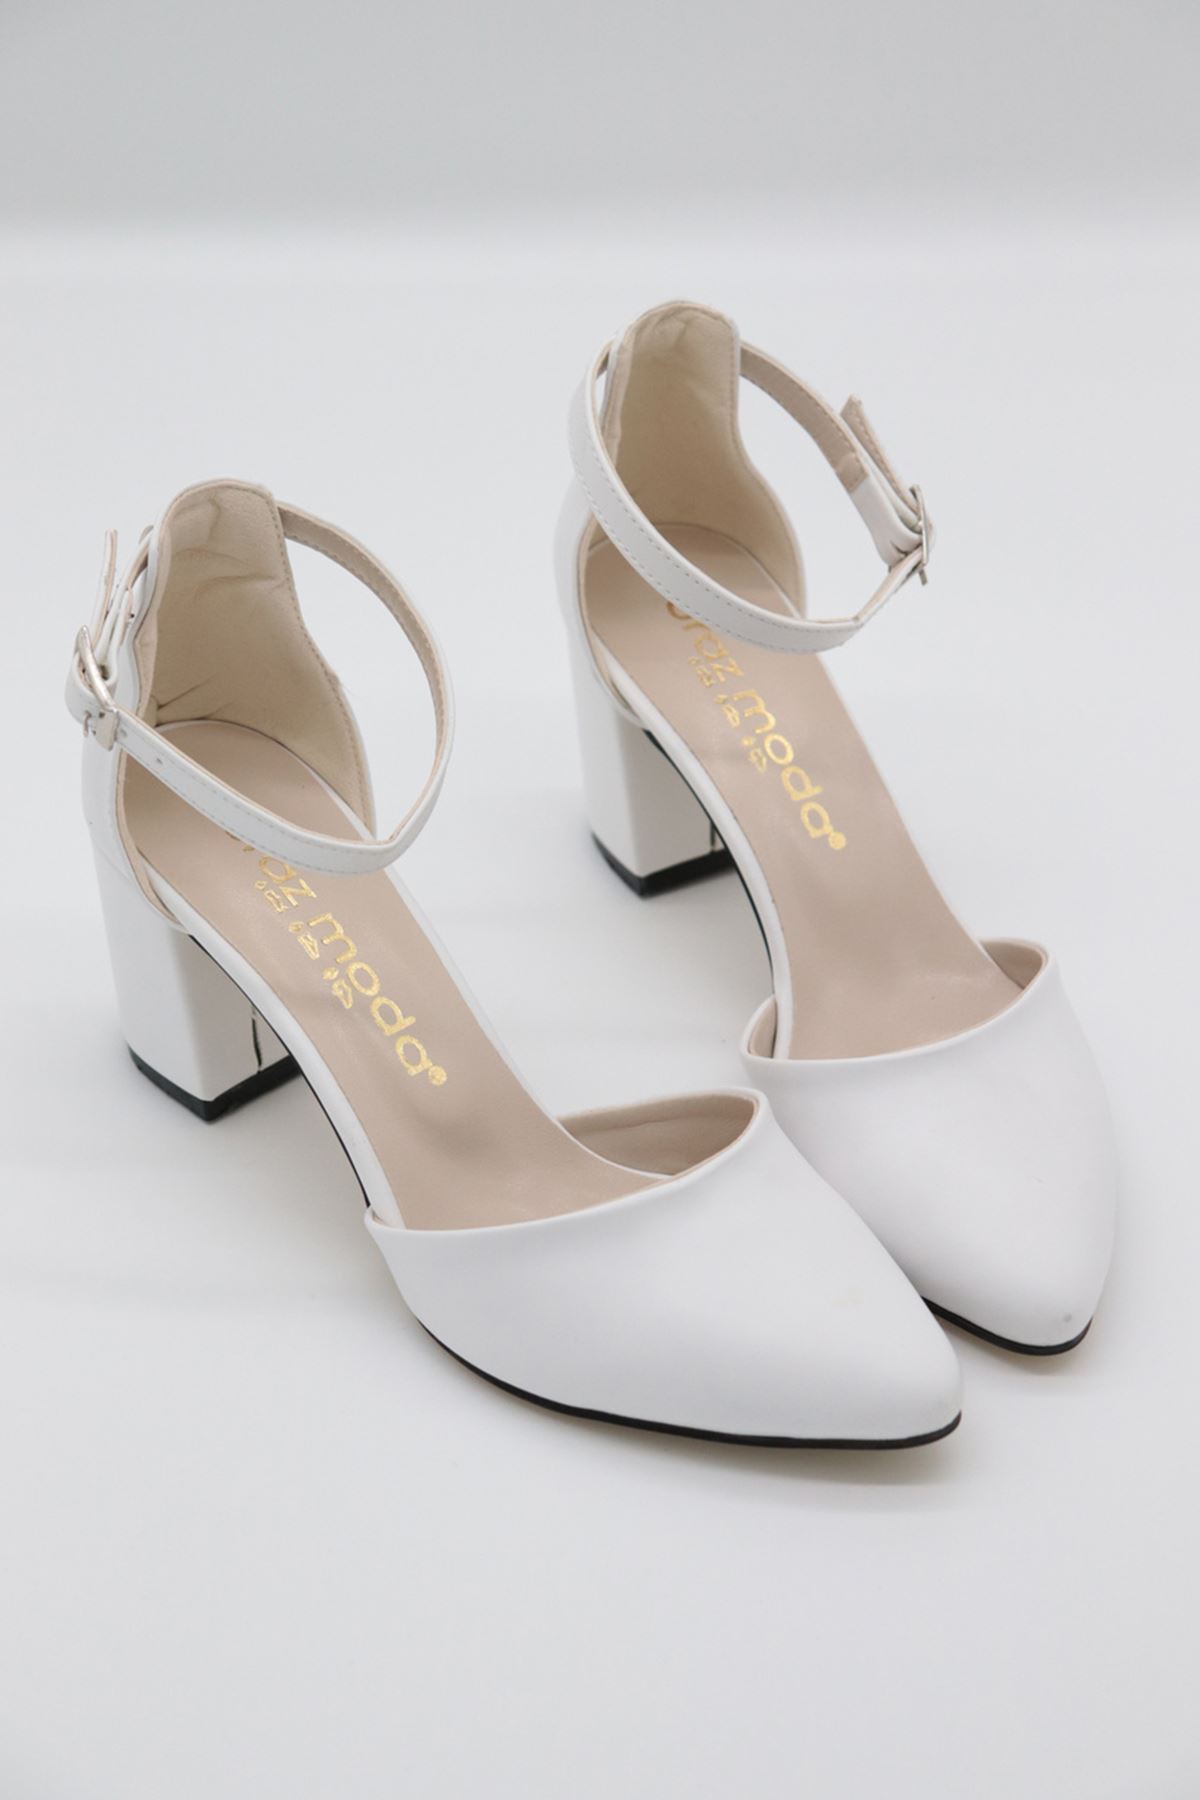 Trendayakkabı - Günlük Topuklu Beyaz  Kadın Ayakkabı 